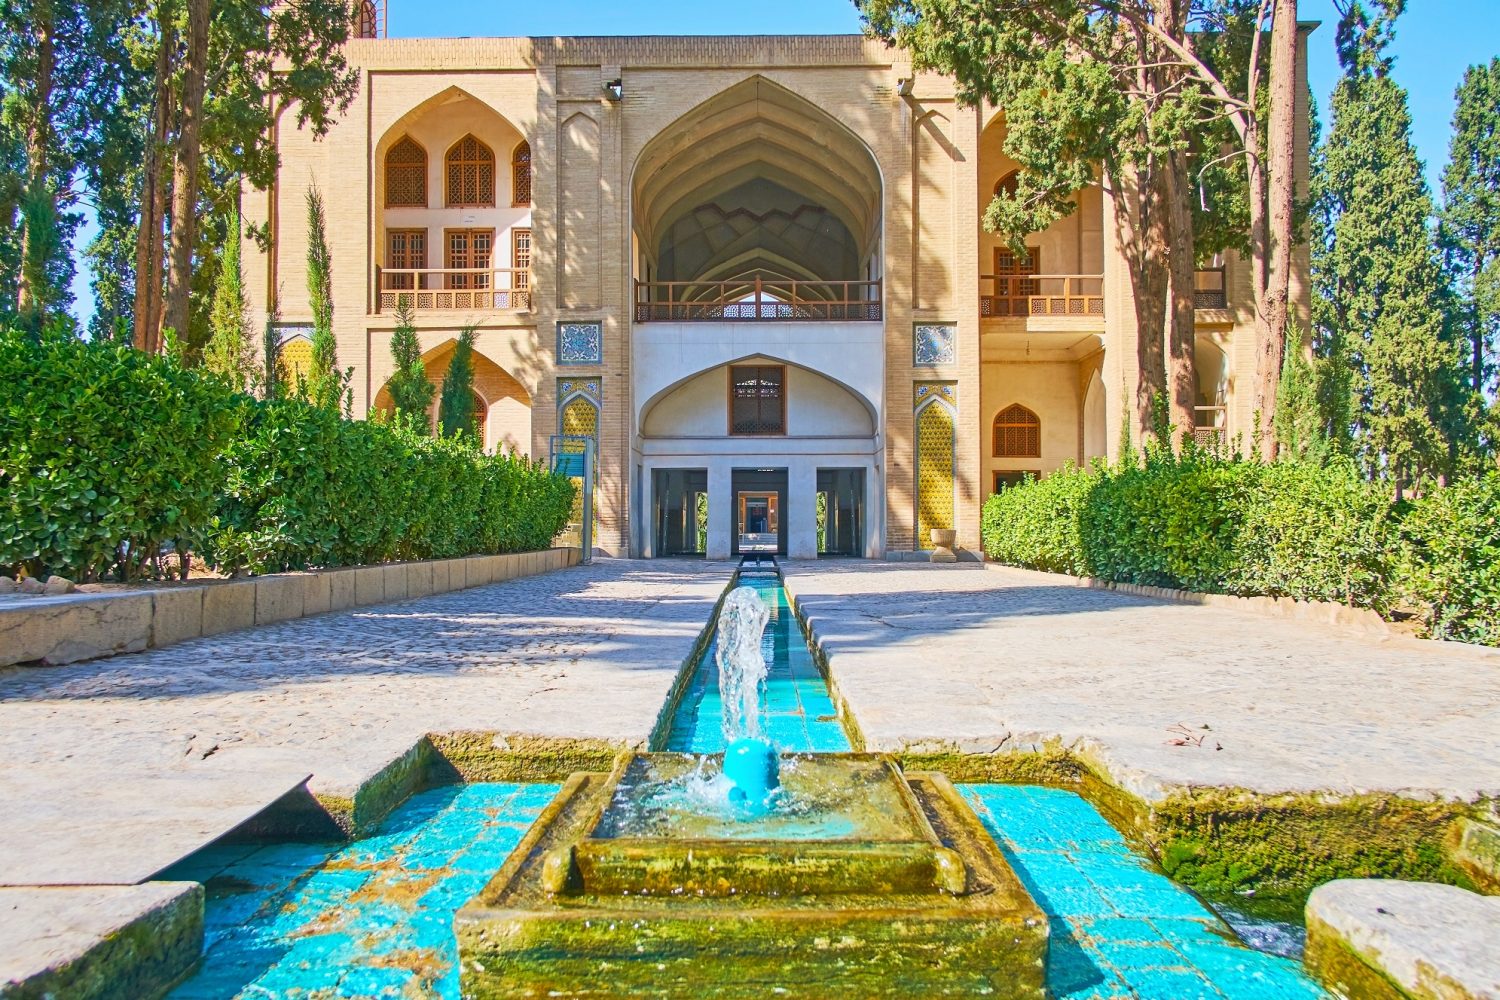 Fin Garden Kashan Iran